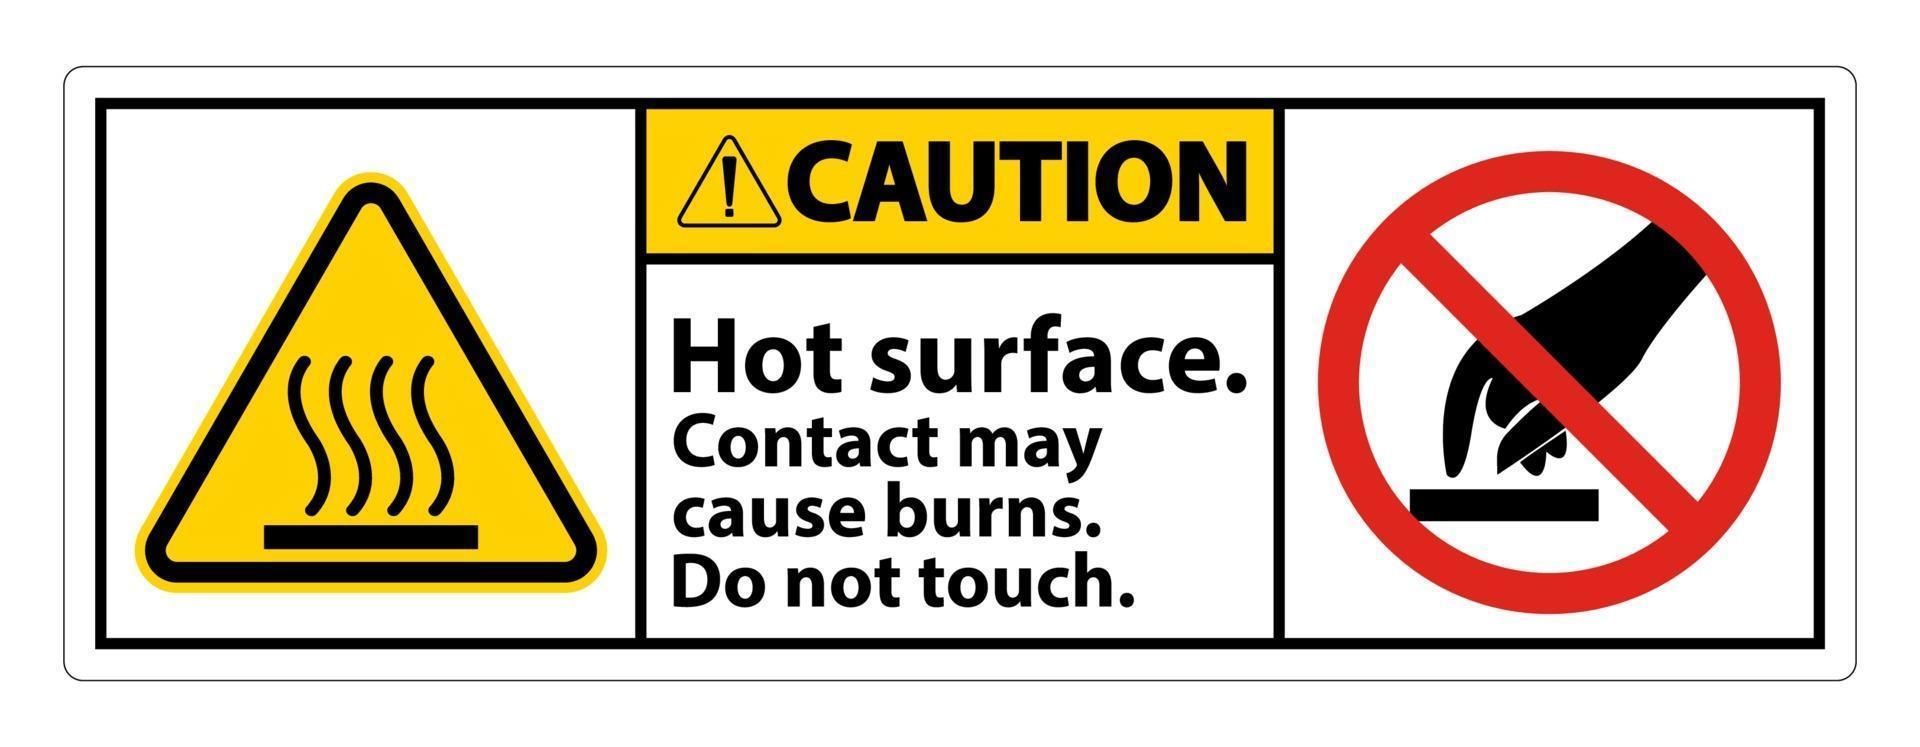 attenzione superficie calda non toccare il simbolo segno isolato su sfondo bianco, illustrazione vettoriale